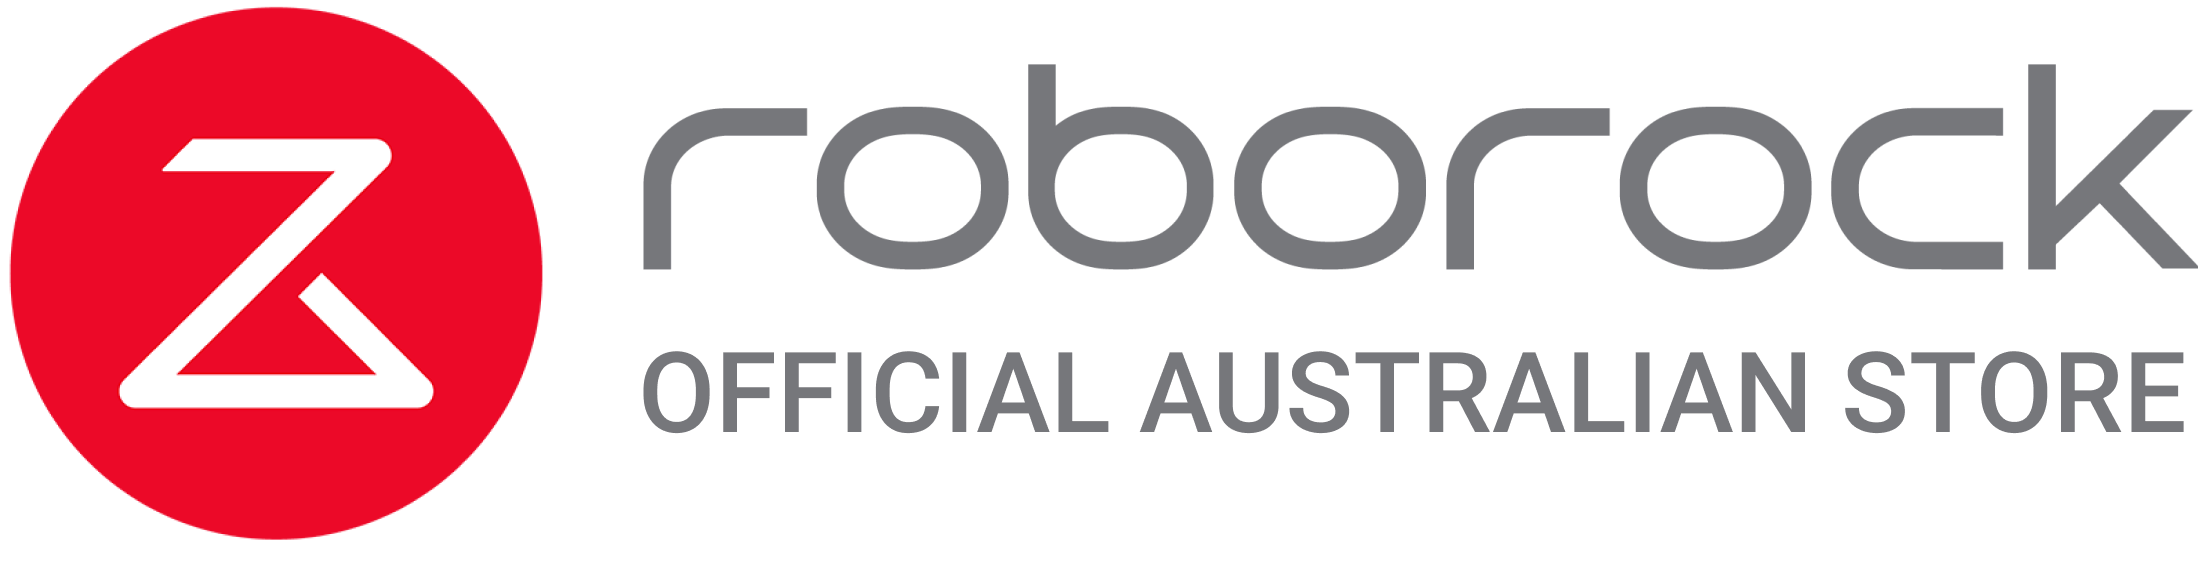 Roborock Store Logo.png__PID:e2dc27af-9465-48f9-bcb6-6febcfd20955